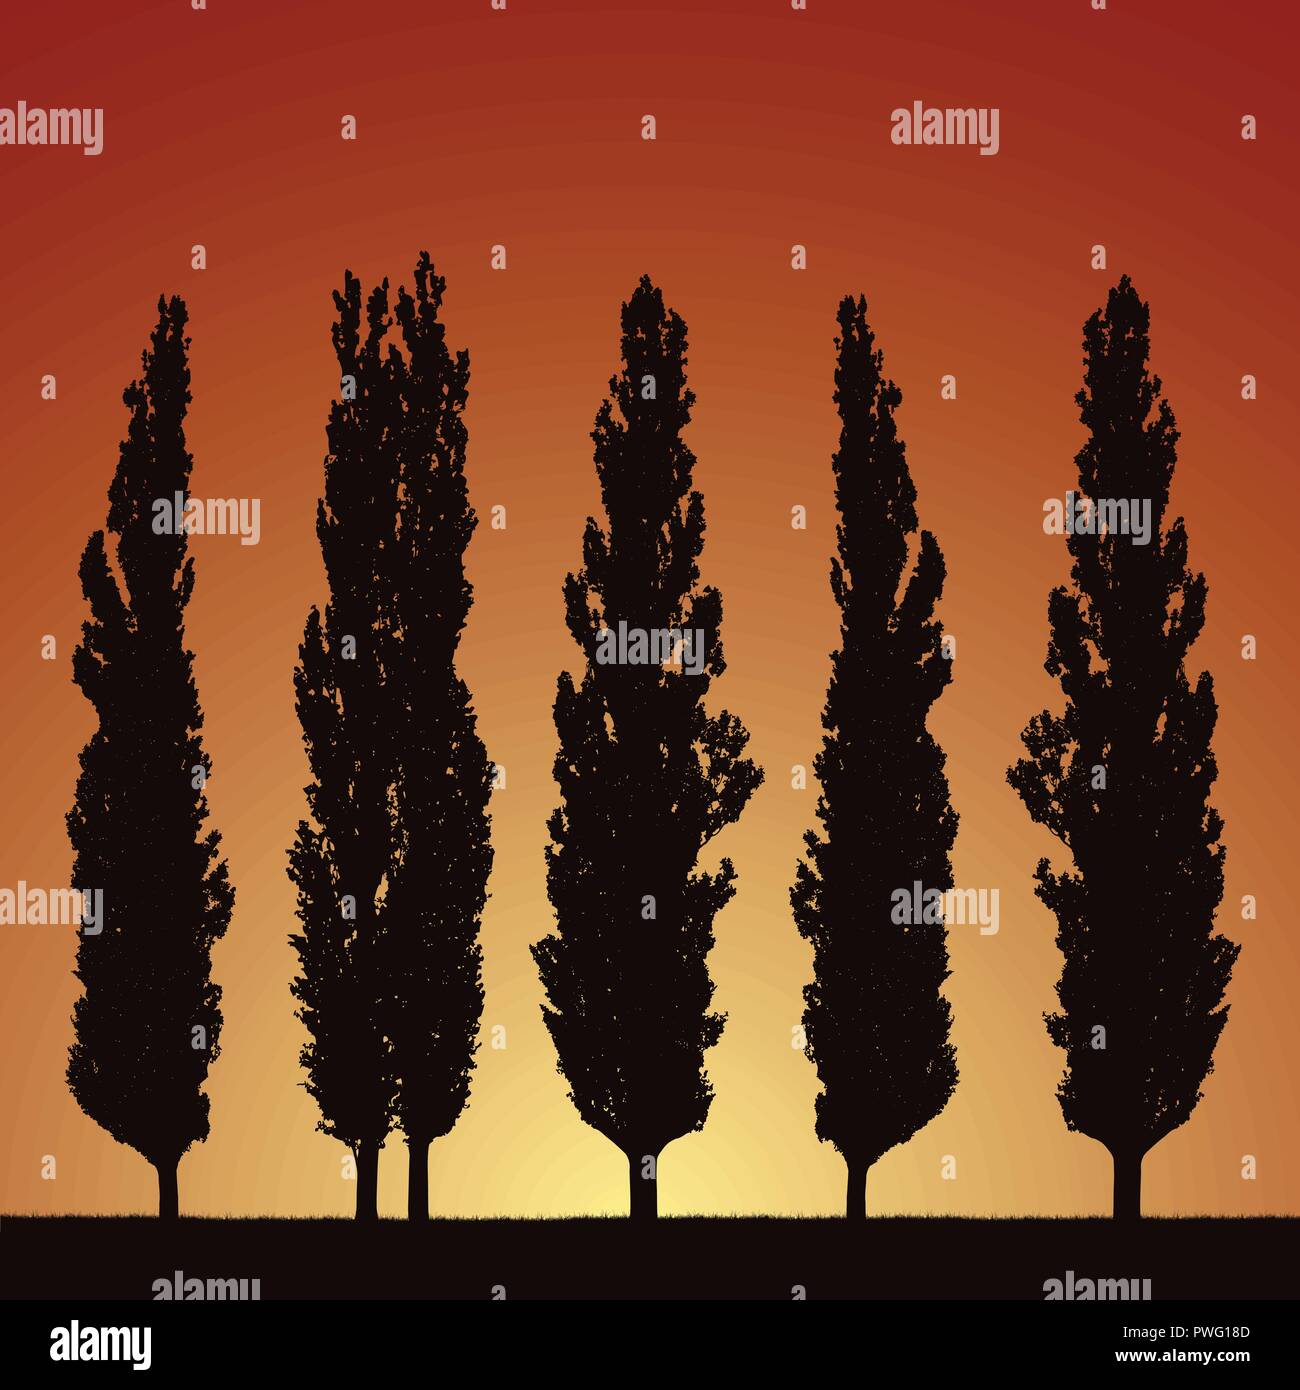 Illustration réaliste de silhouettes de cinq arbres - les peupliers, l'herbe et la hausse ou coucher de soleil sur matin ou soir Ciel orange - vector Illustration de Vecteur